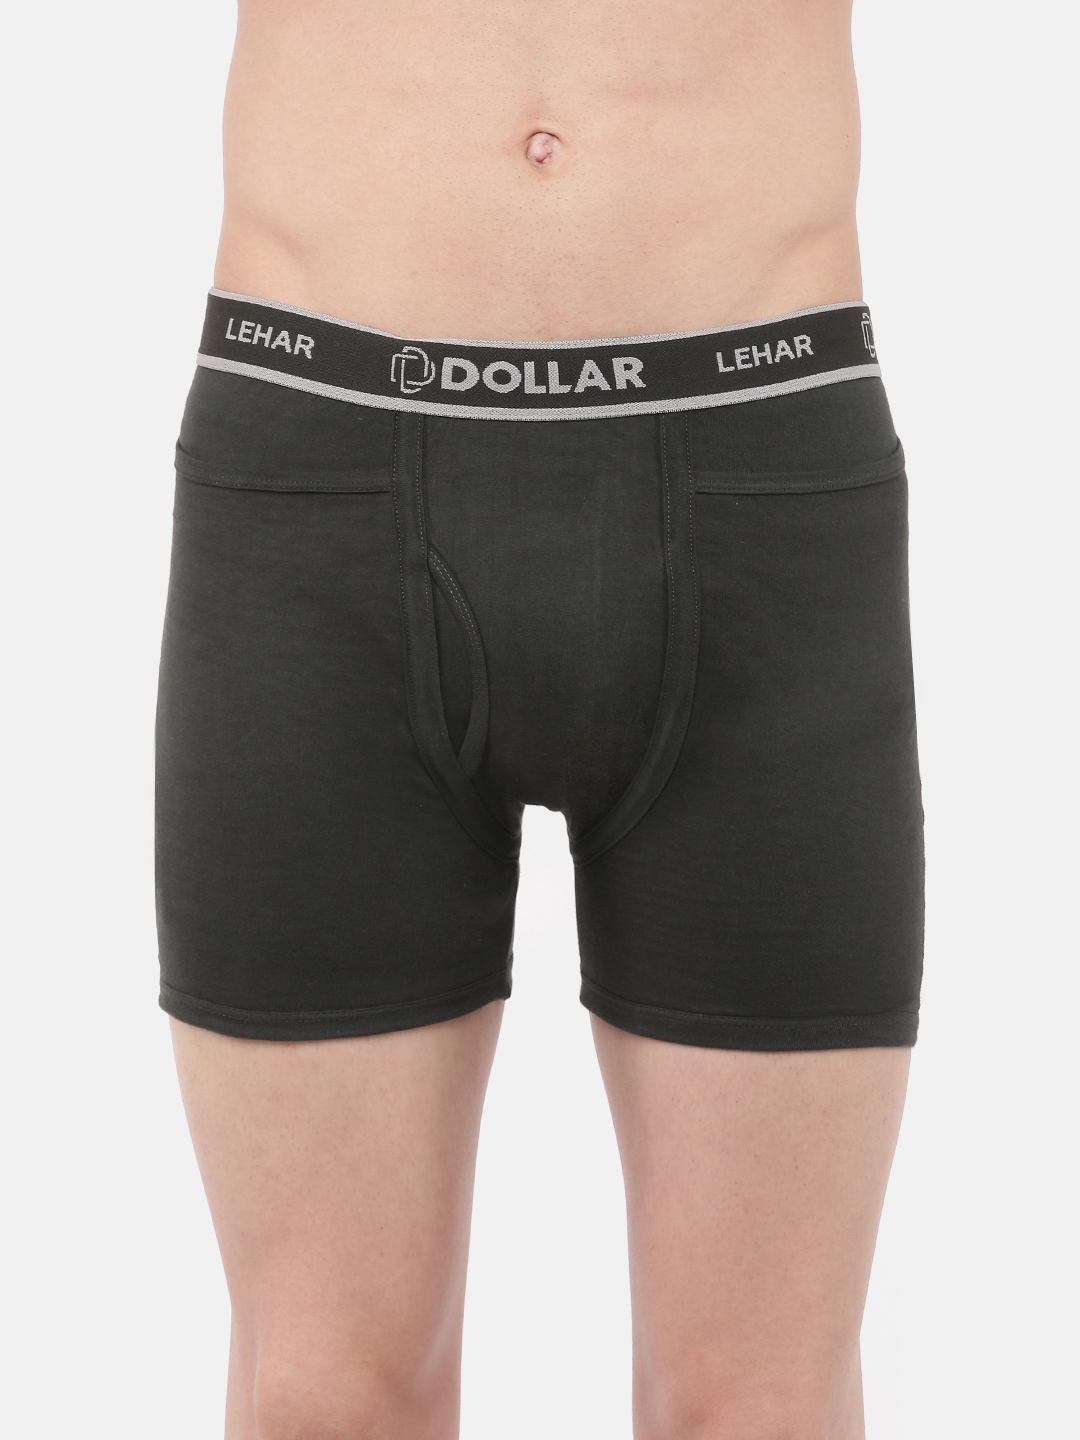 Dollar Lehar Mens Pack of 5 Fine Pocket Trunk – Dollarshoppe